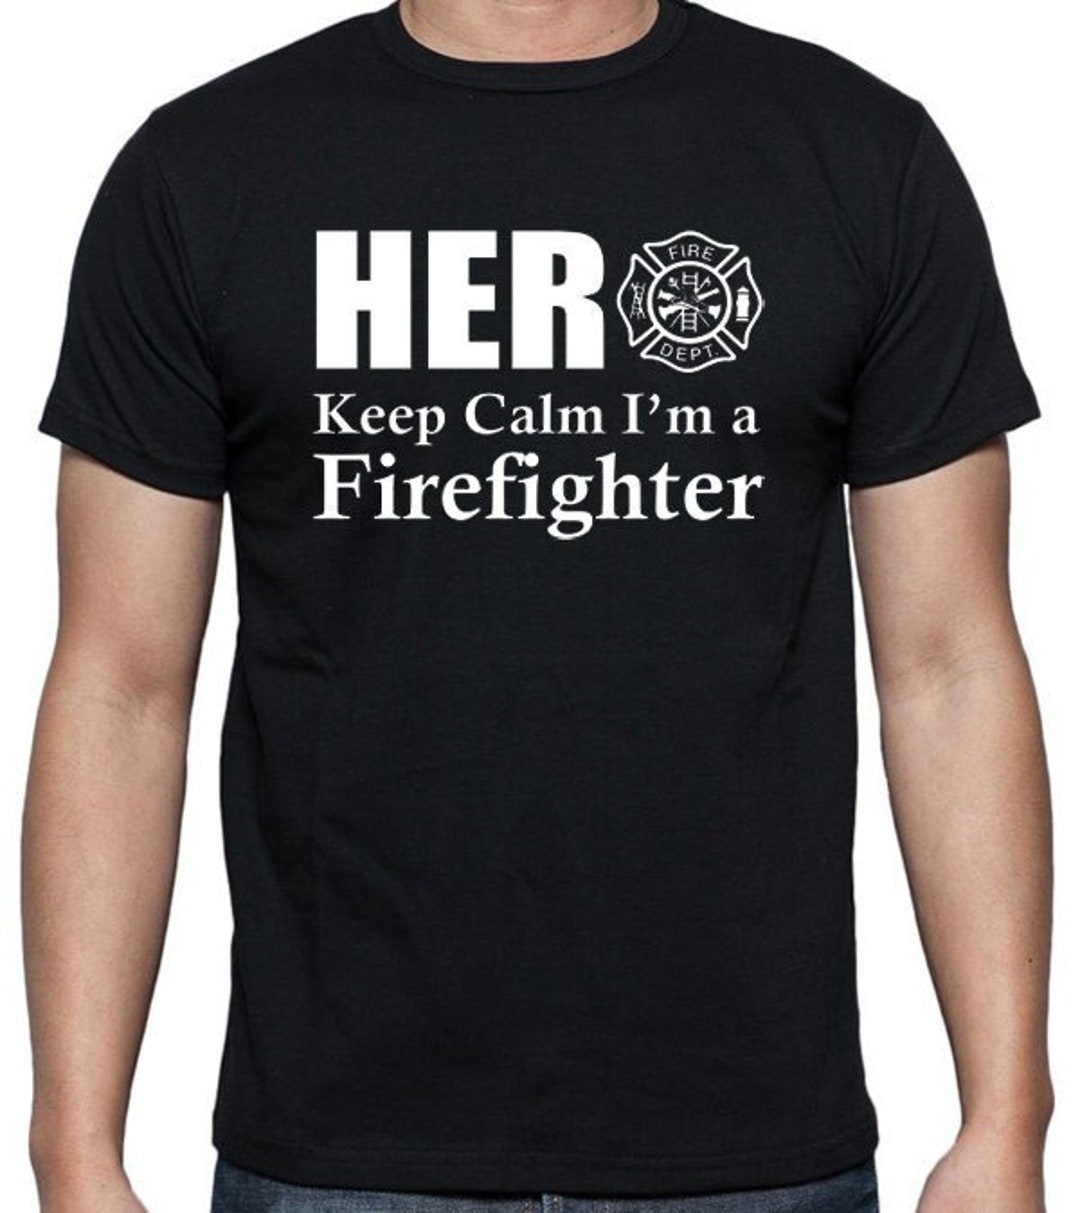 Firefighter T-Shirt - Hero Keep Calm I'm A Firefighter, Firemen and Fire Women Shirts.